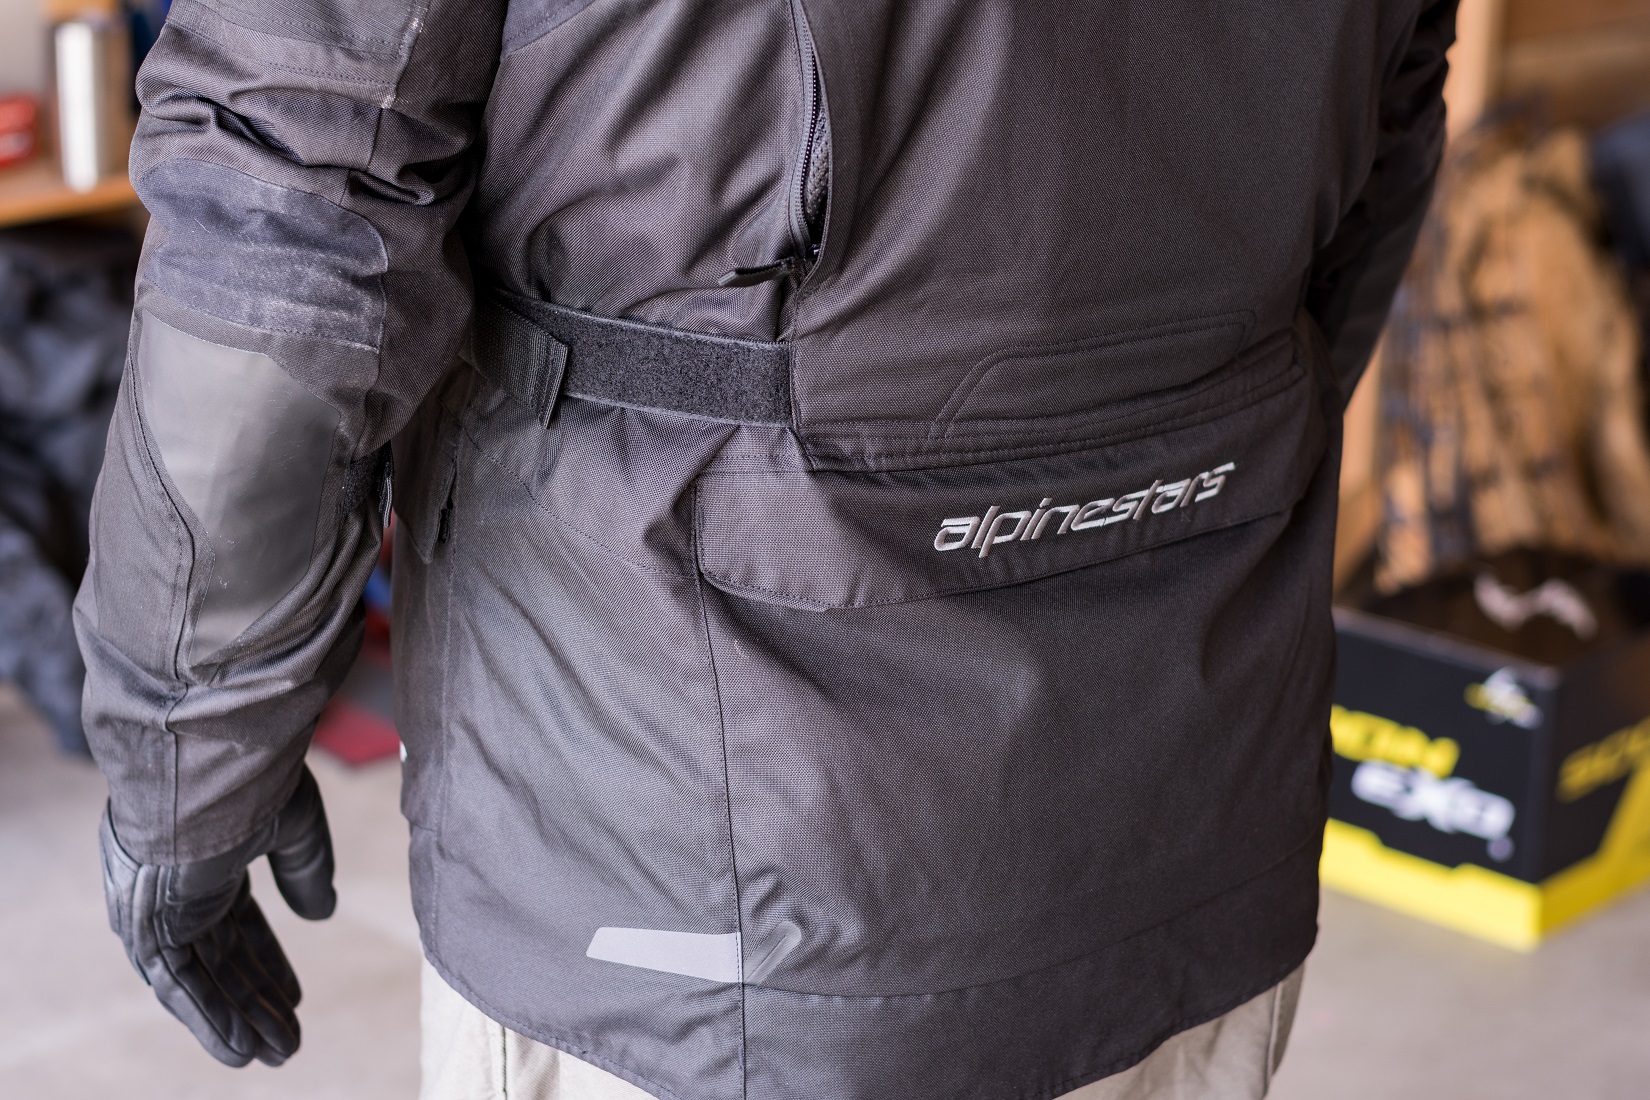 Alpinestars Andes V3 Touring closeup of adjustment straps and back pocket